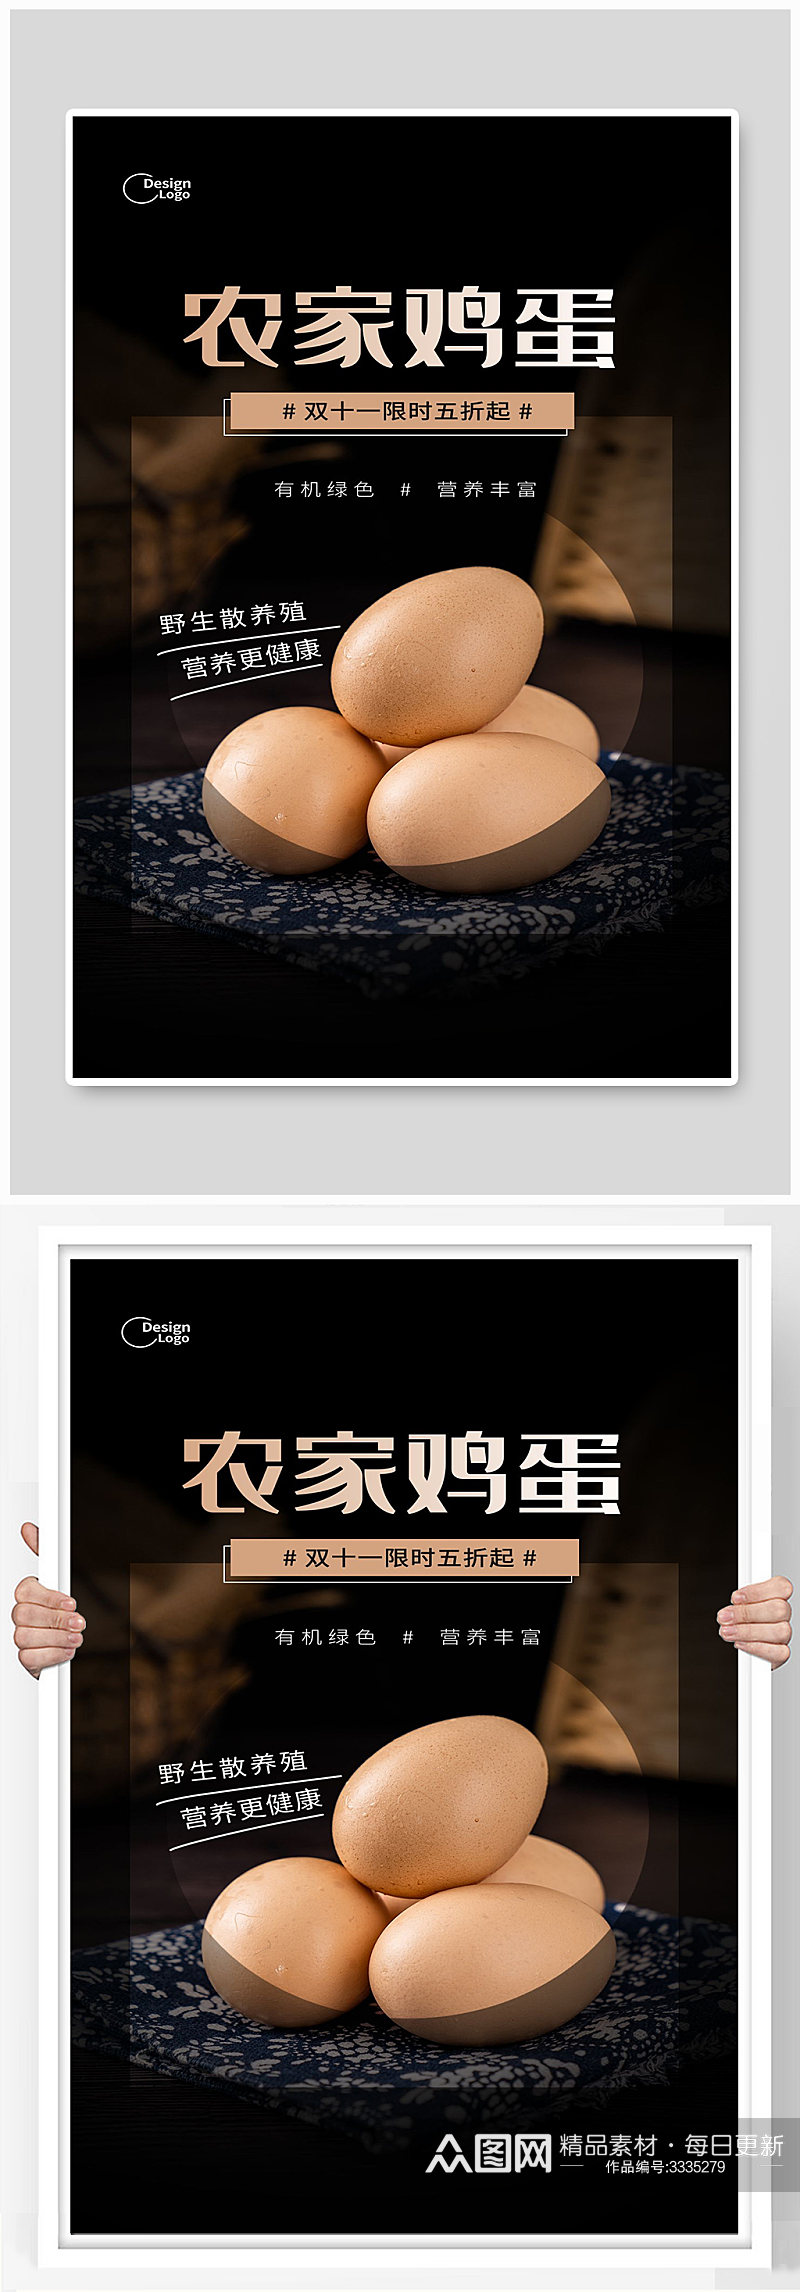 农家鸡蛋宣传海报设计素材